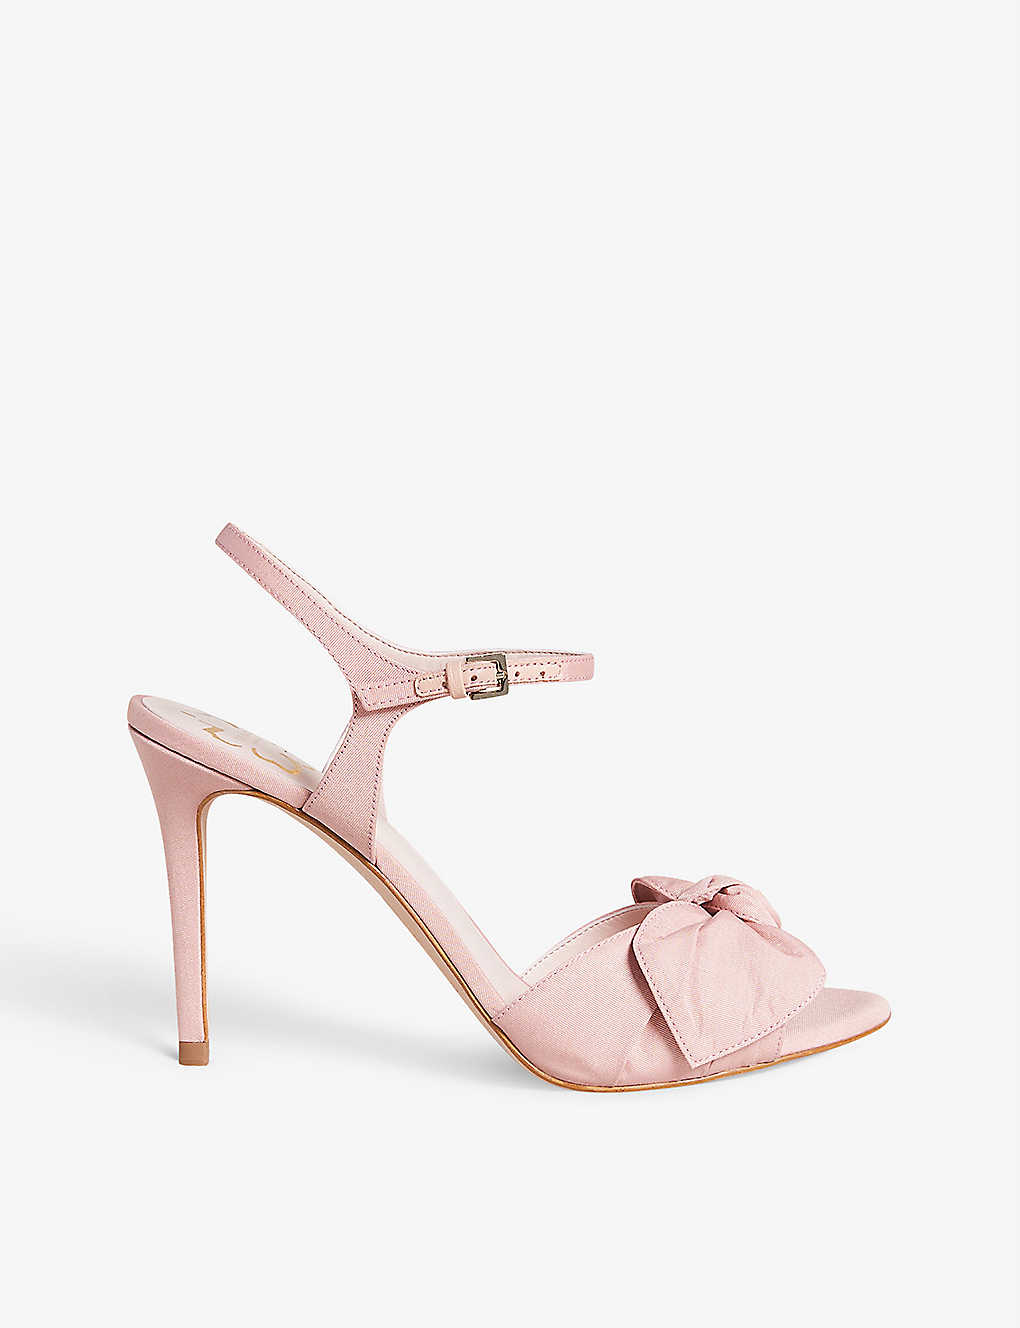 Shop Ted Baker Women's Dusky-pink Moire Bow-embellished Satin Heeled Sandals